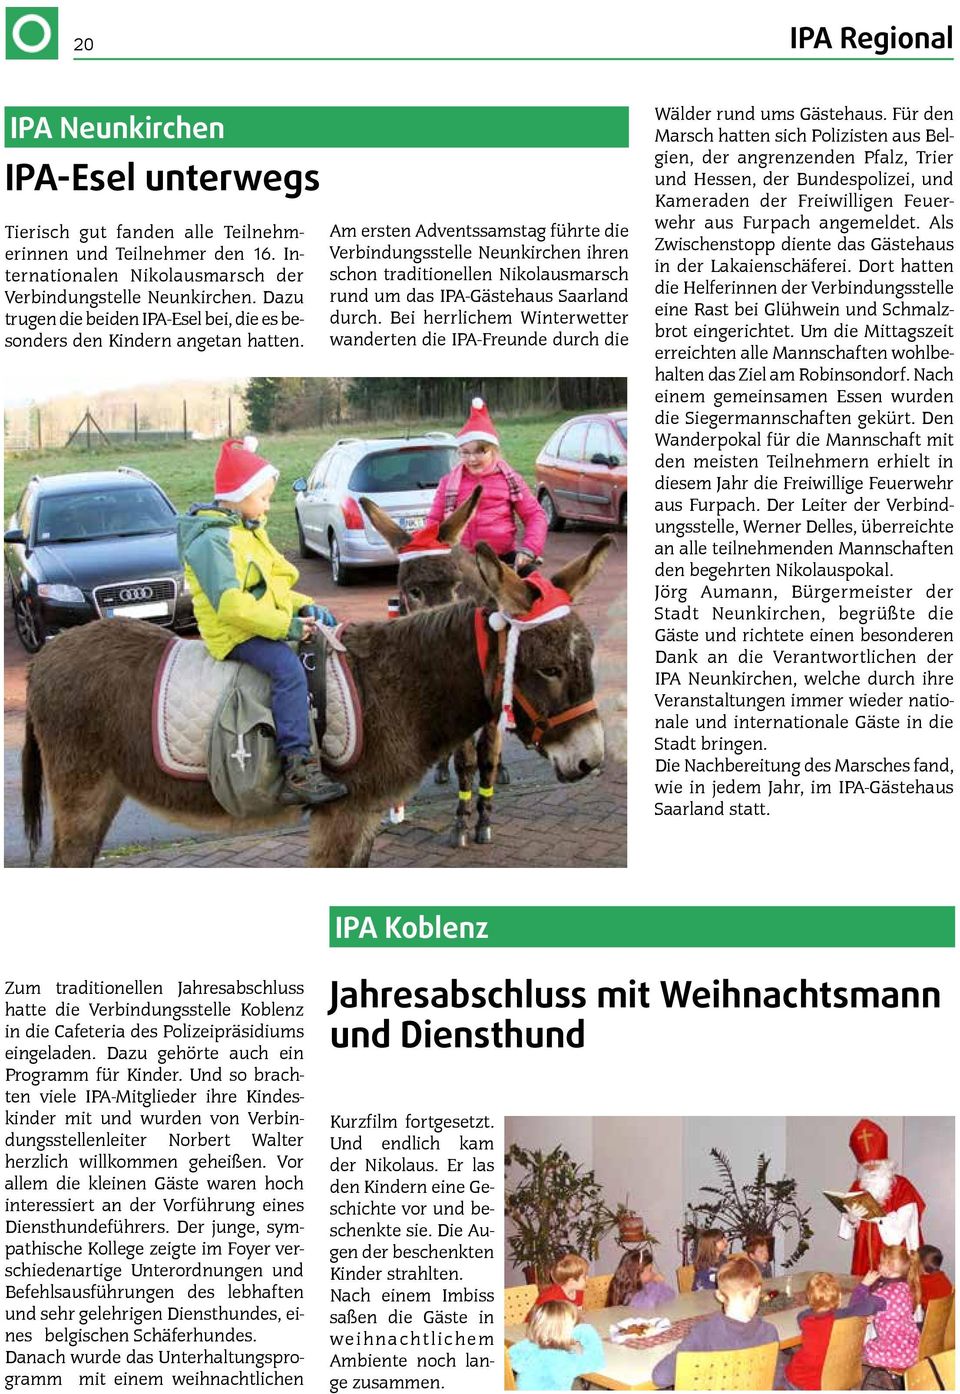 Am ersten Adventssamstag führte die Verbindungsstelle Neunkirchen ihren schon traditionellen Nikolausmarsch rund um das IPA-Gästehaus Saarland durch.